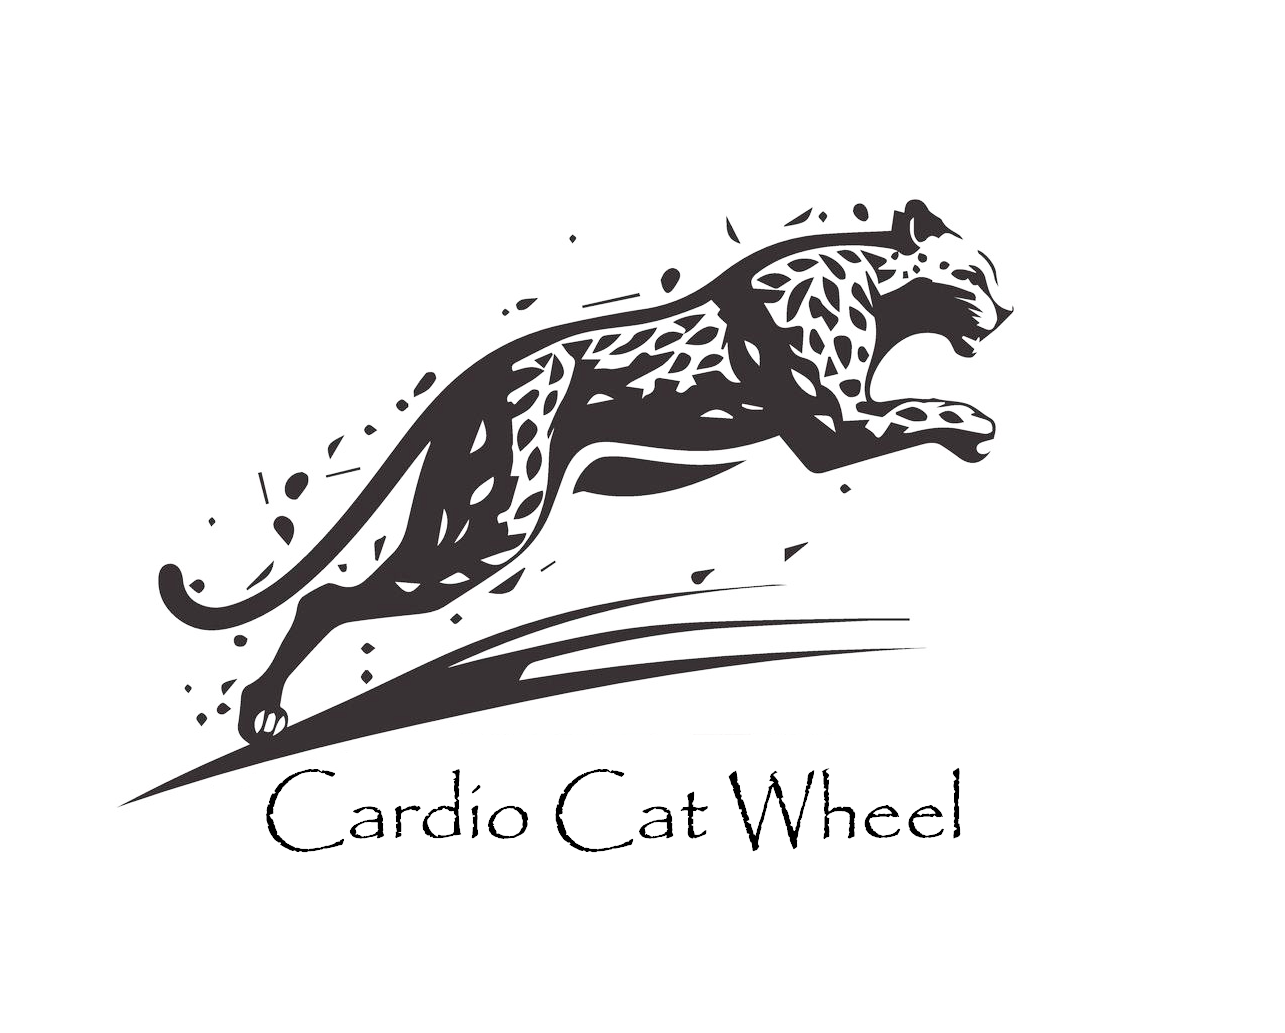 Cardio Cat Wheel